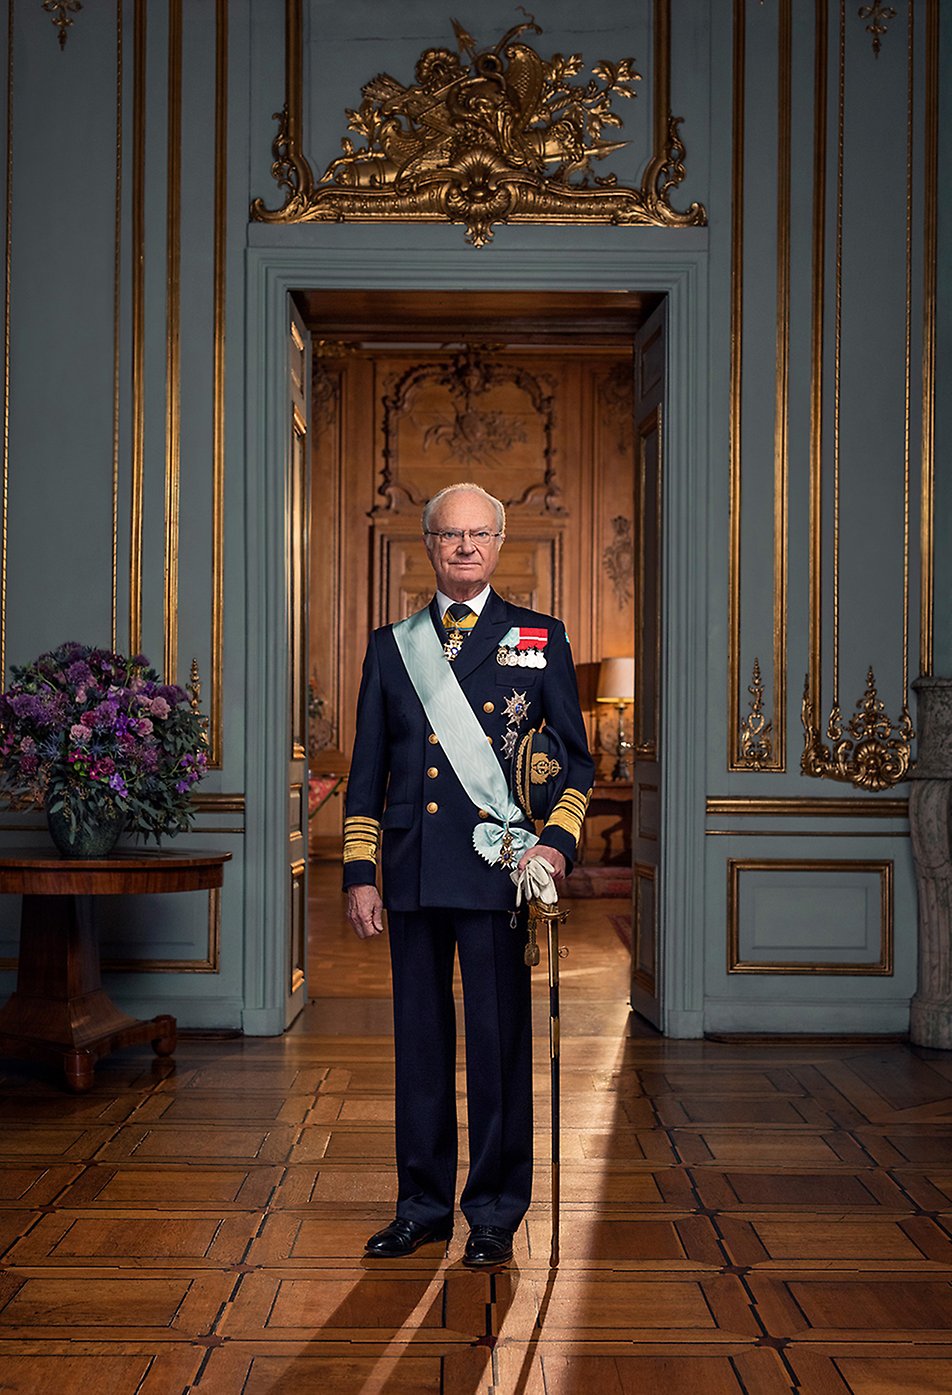 NJ. V. Kralj Carl XVI Gustaf.